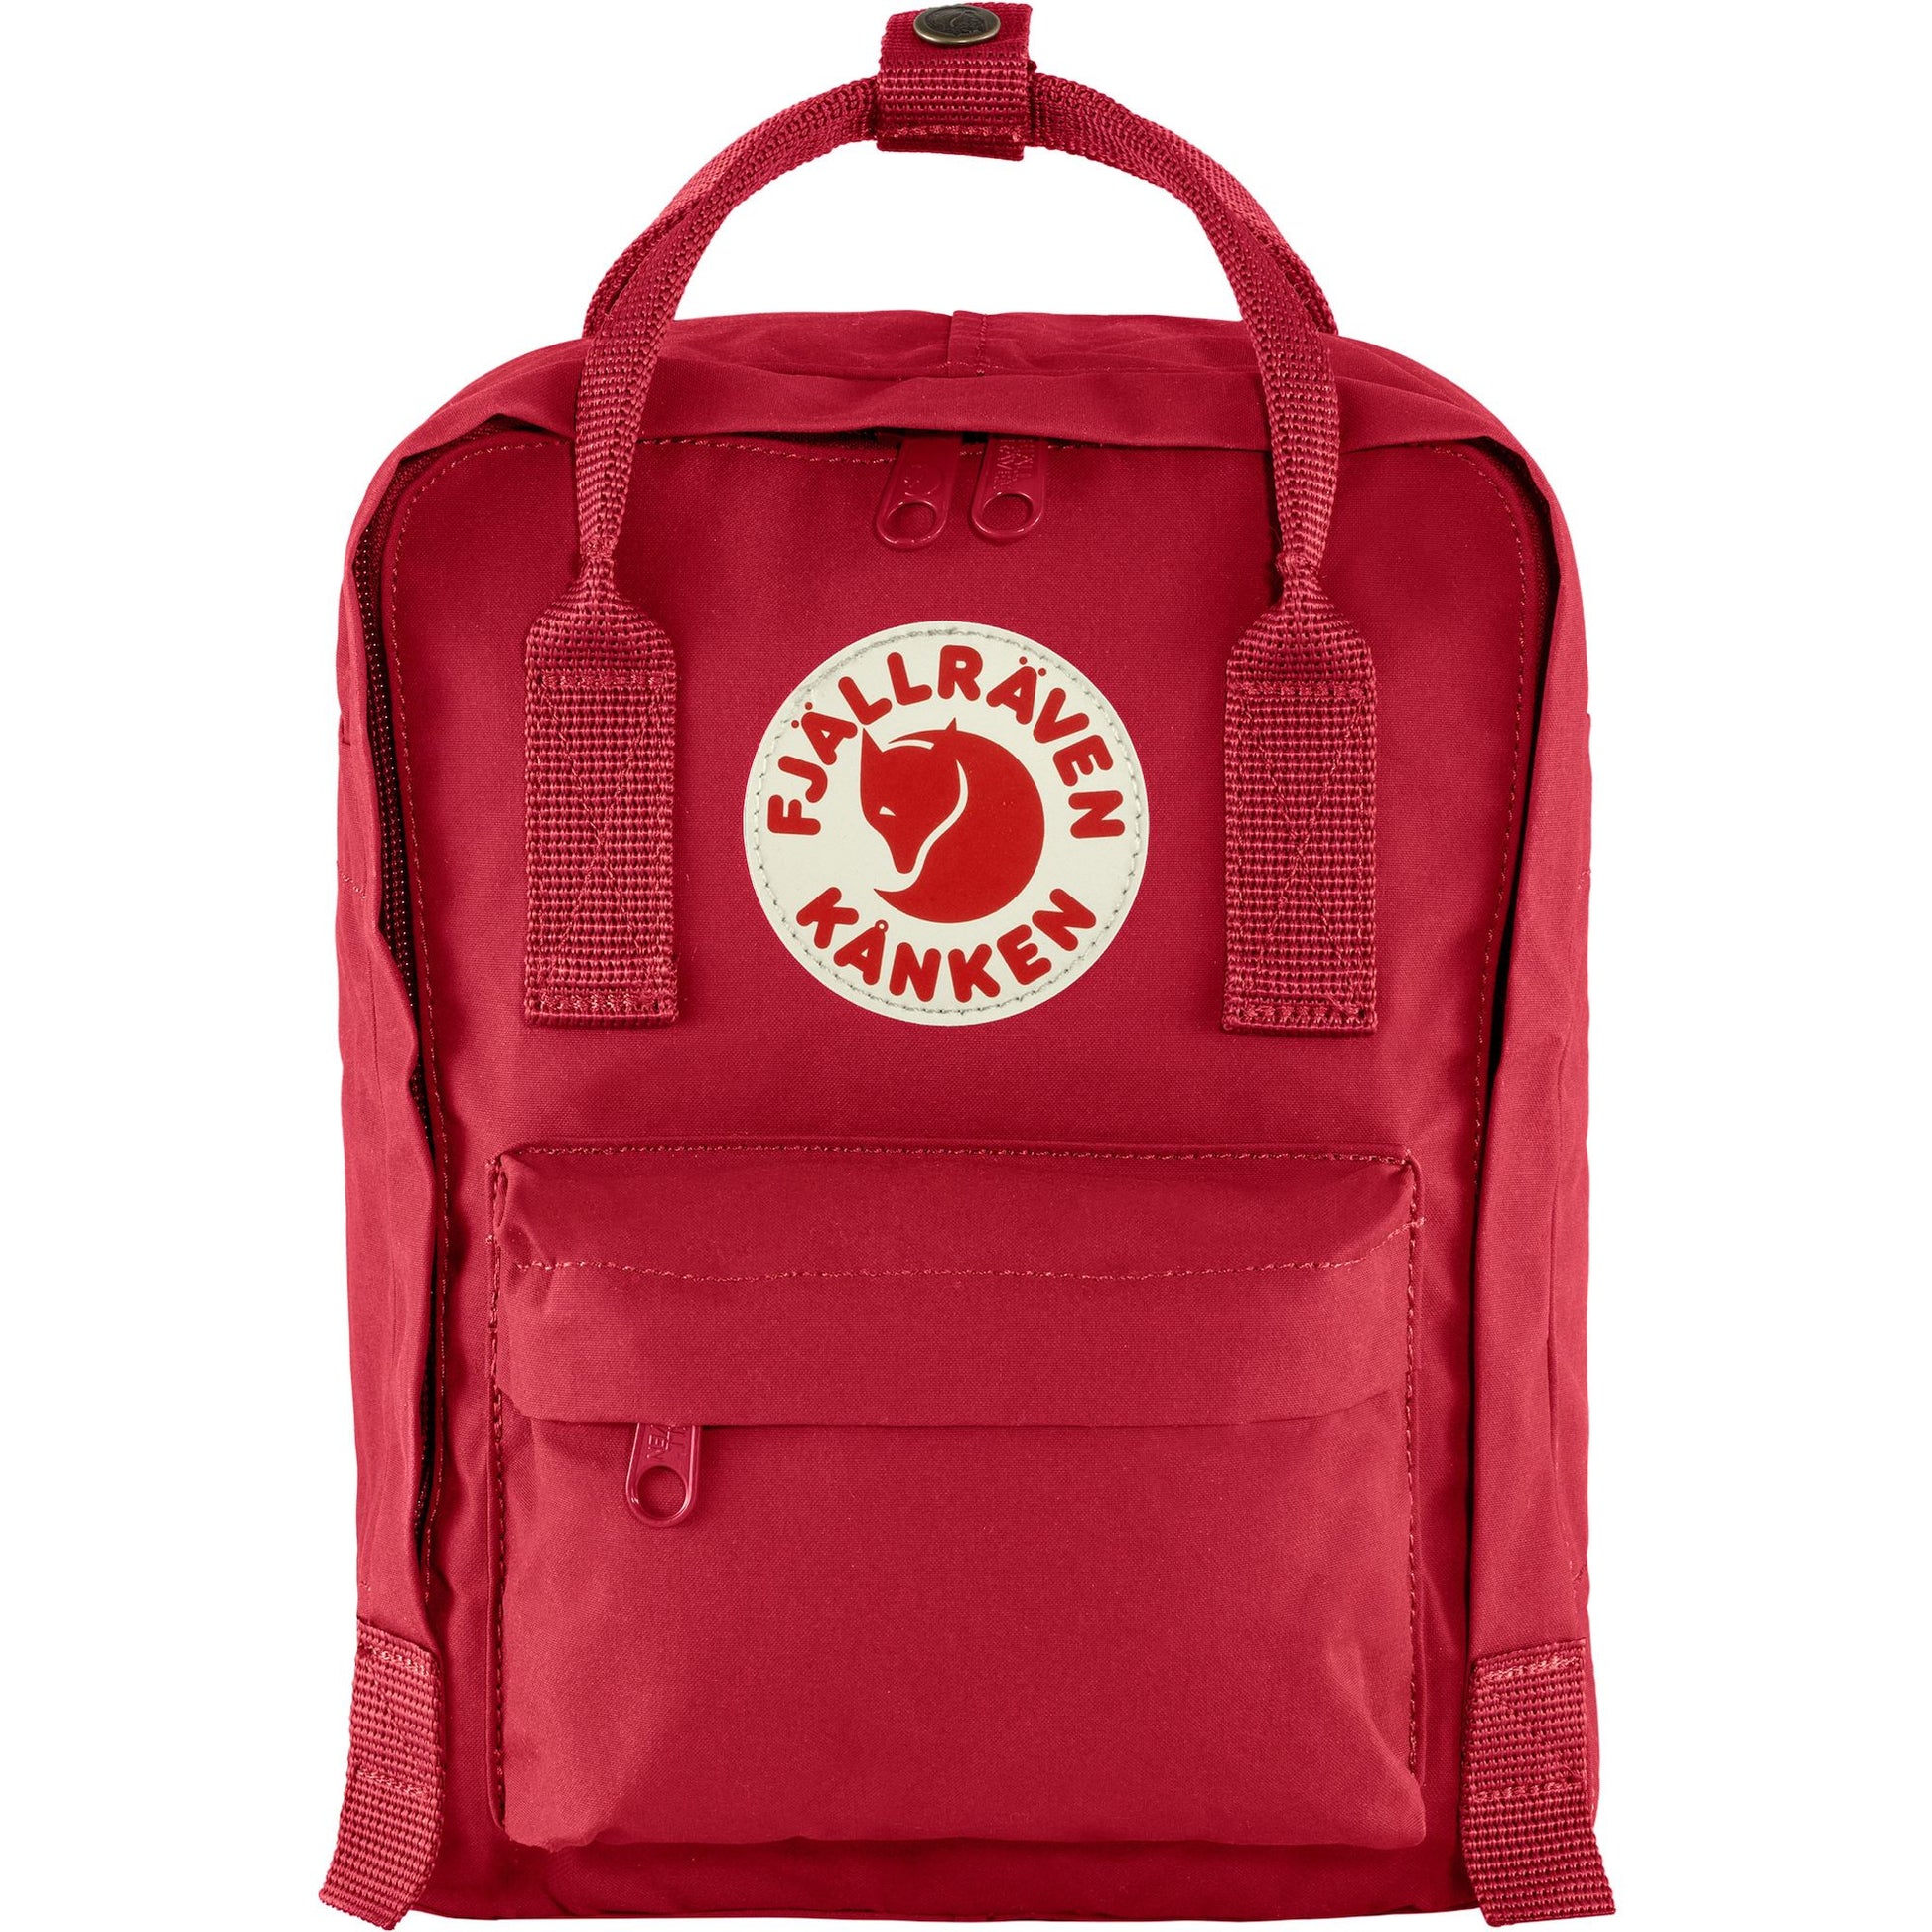 Red mini backpack